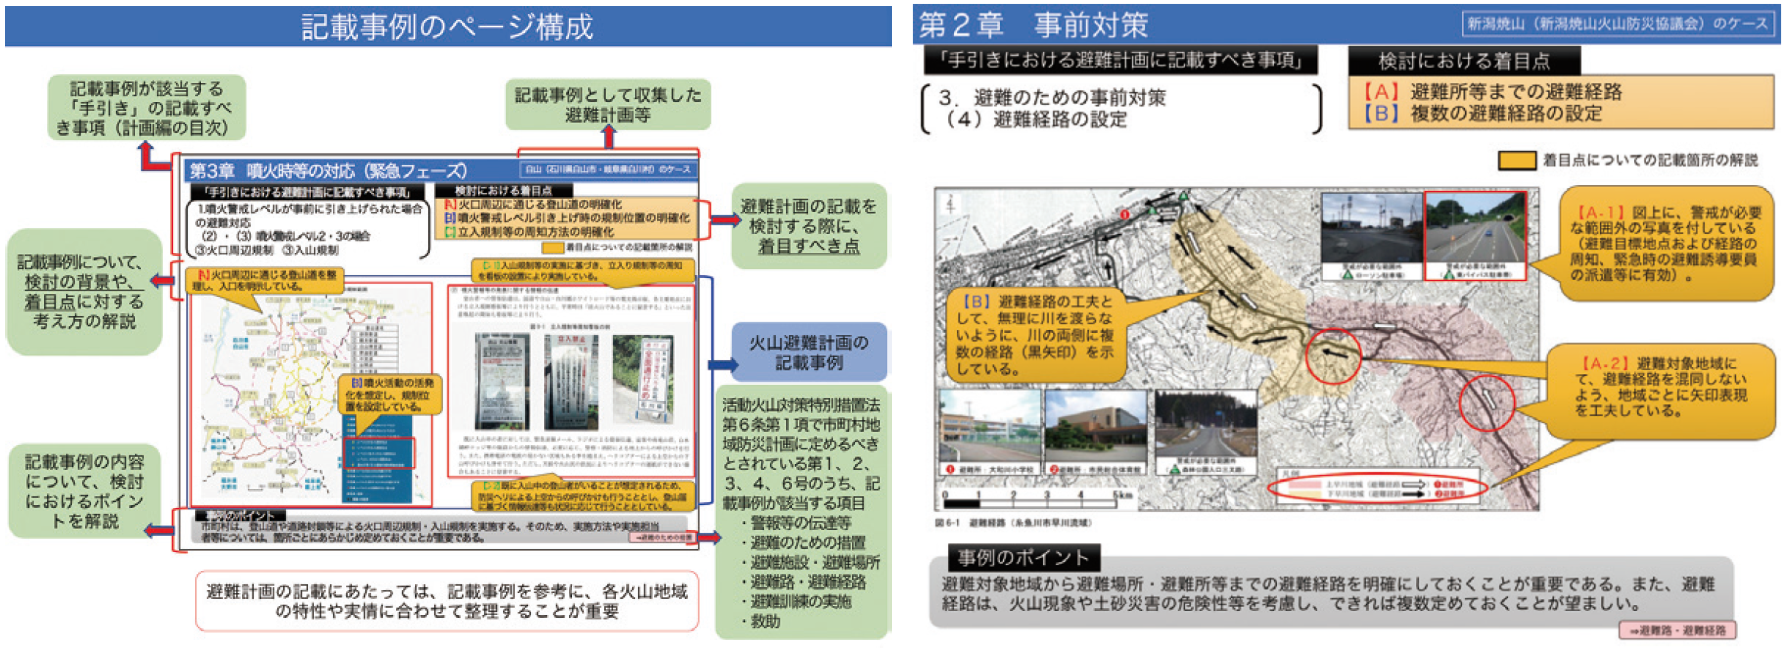 図3： 標準的な避難計画の記載事例のページ構成（左）と避難経路の設定の例（右）